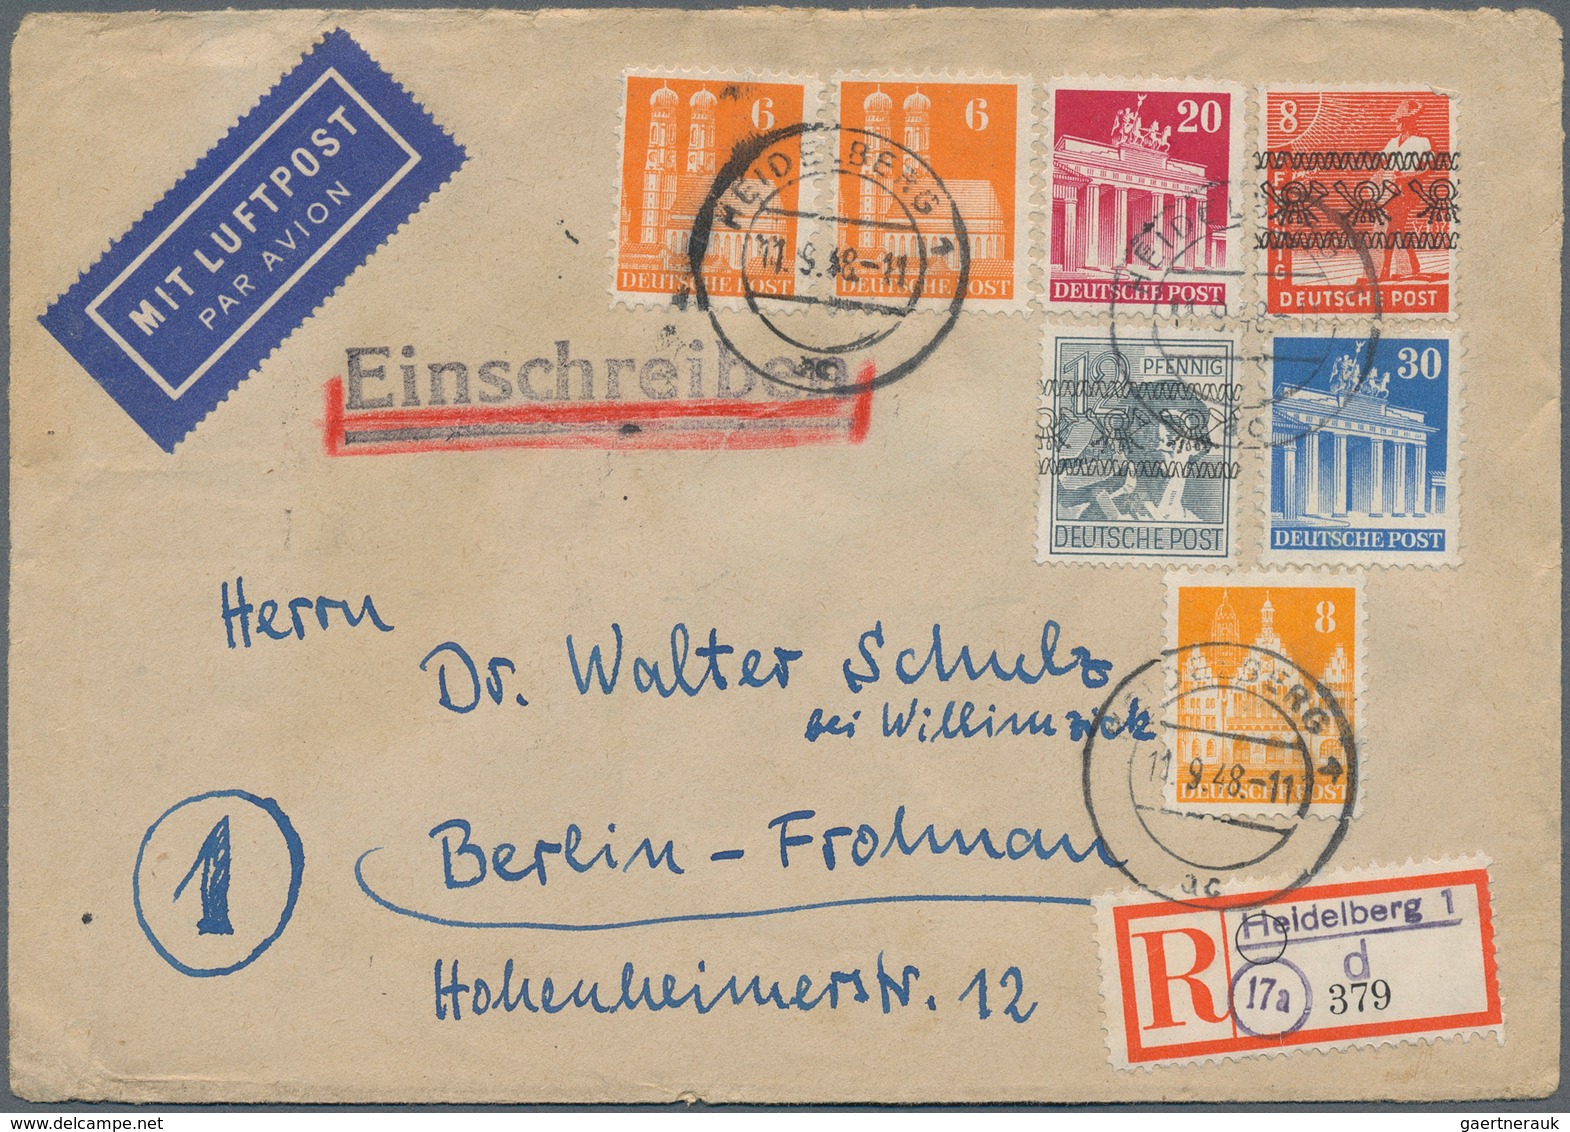 32413 Bundesrepublik und Berlin: 1948/1964, vielseitige Partie von ca. 90 Briefen, Karten und Ganzsachen,